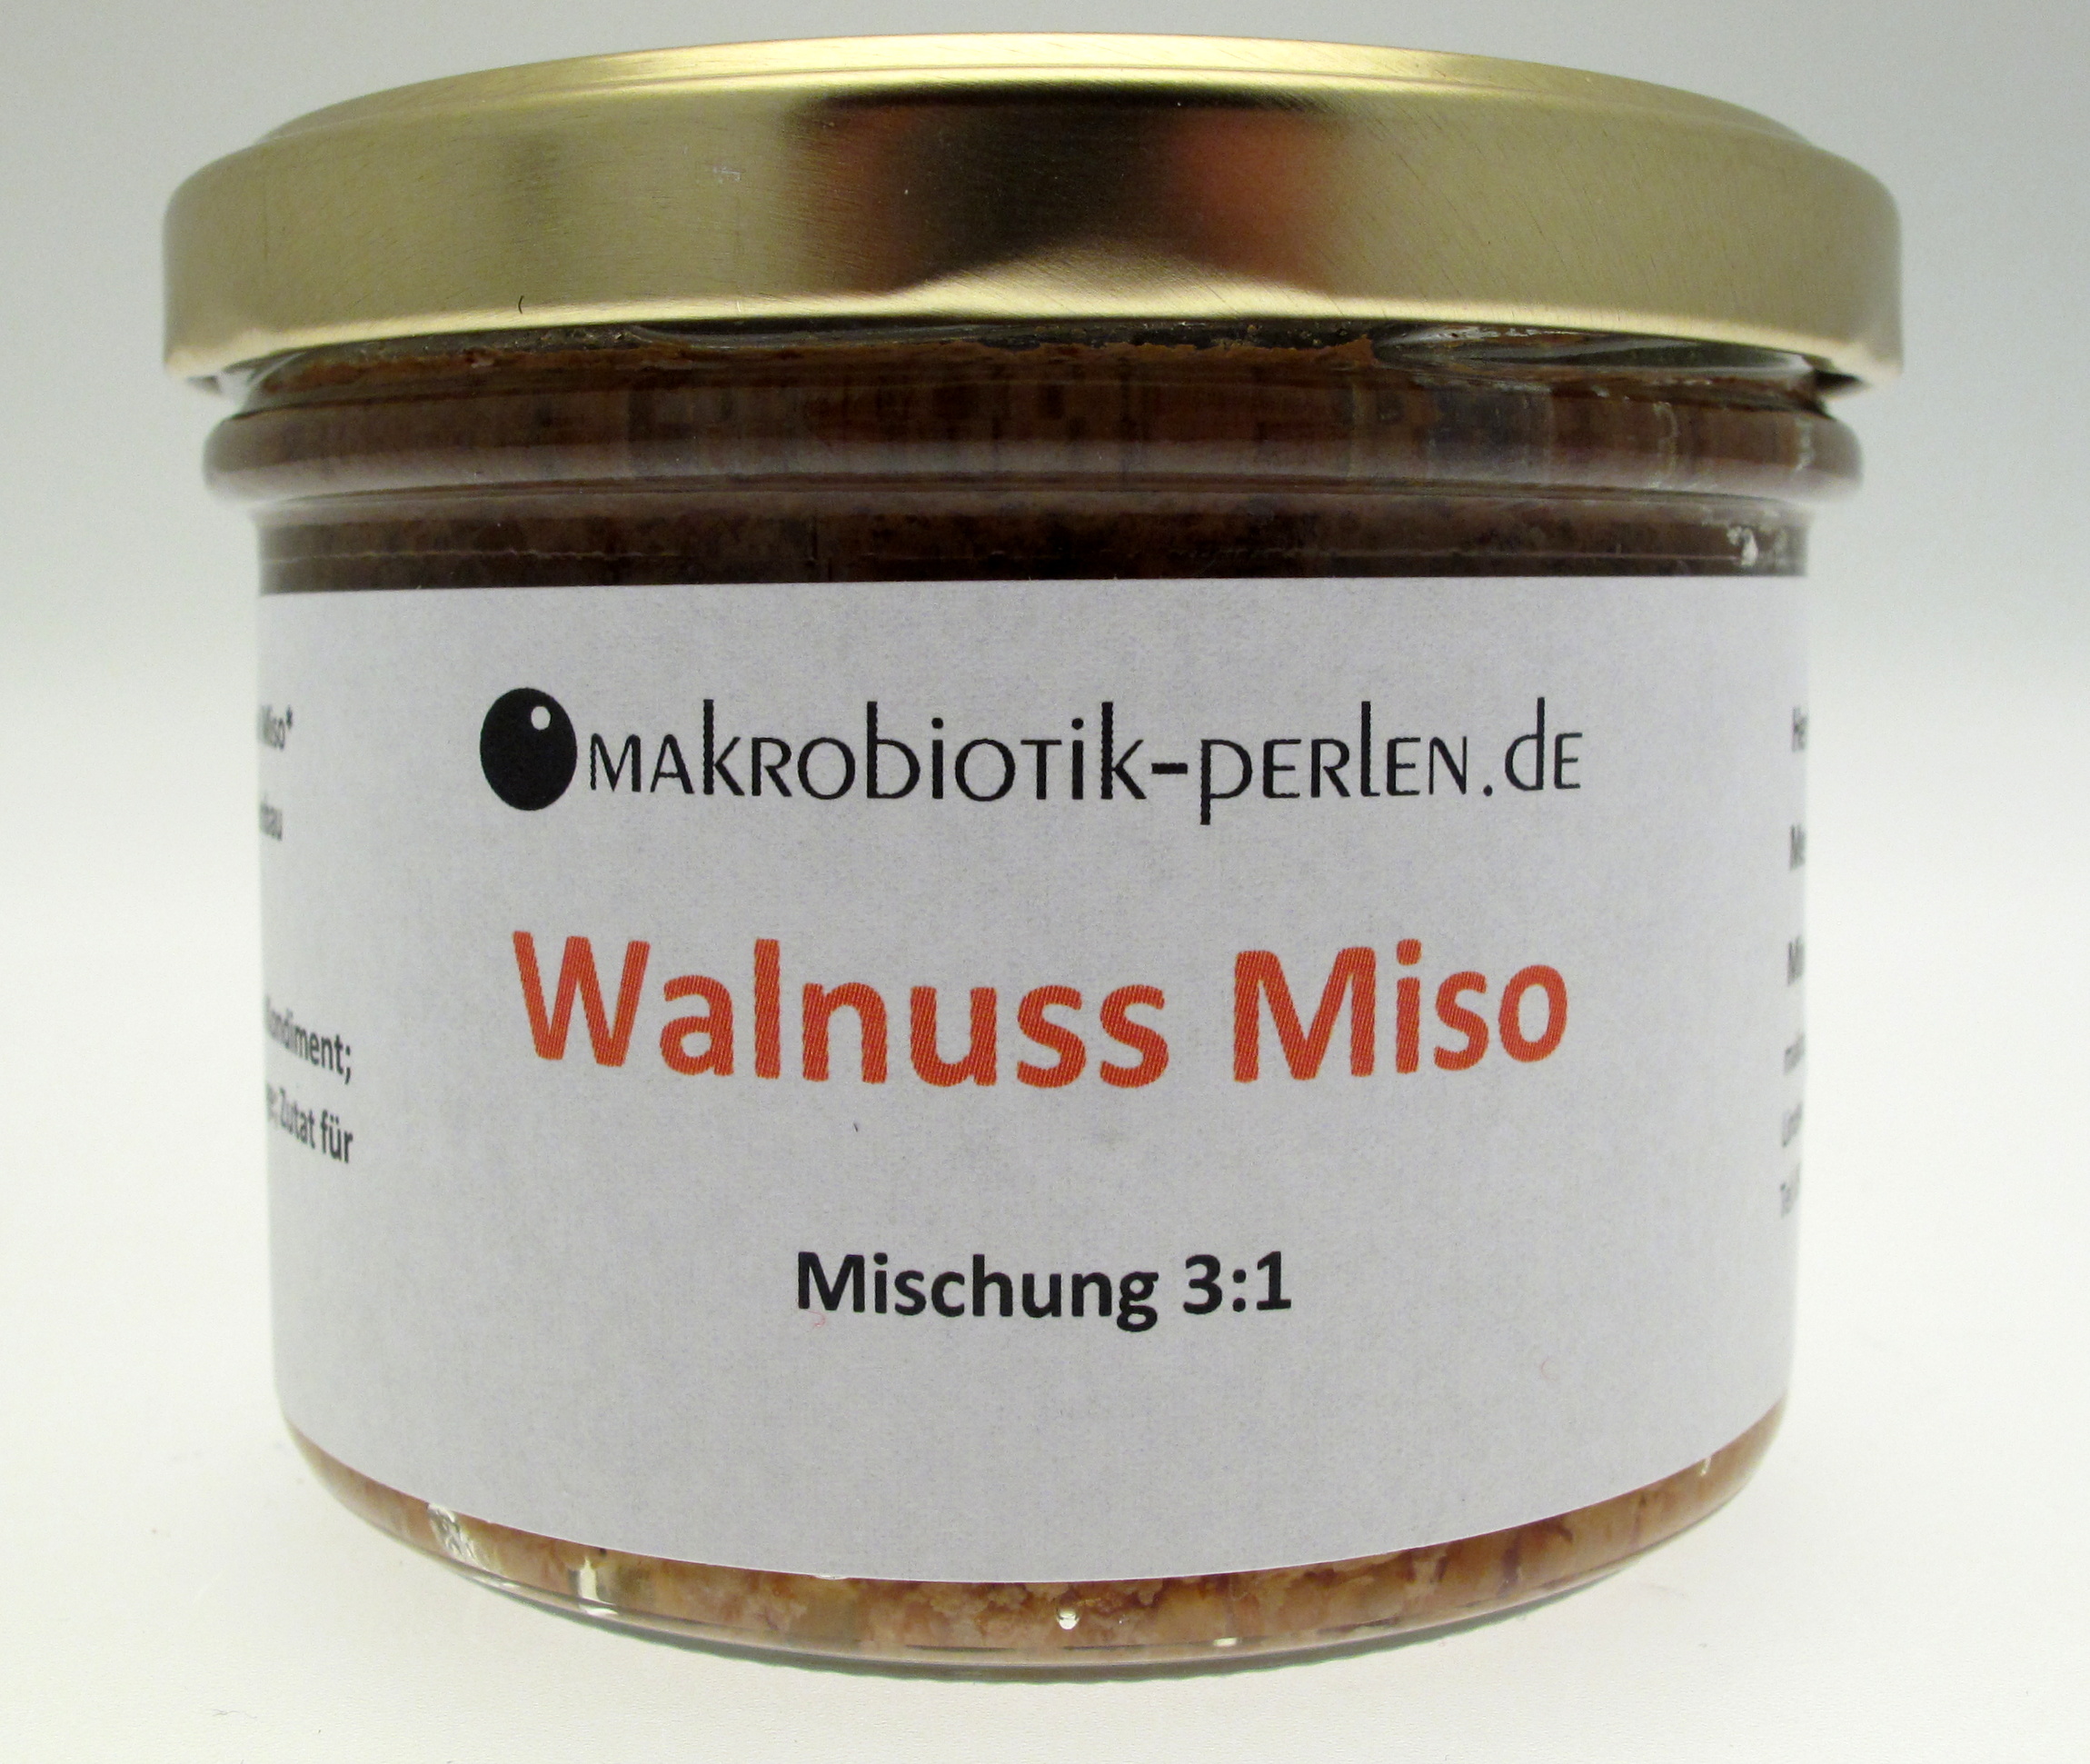 Walnuss Miso